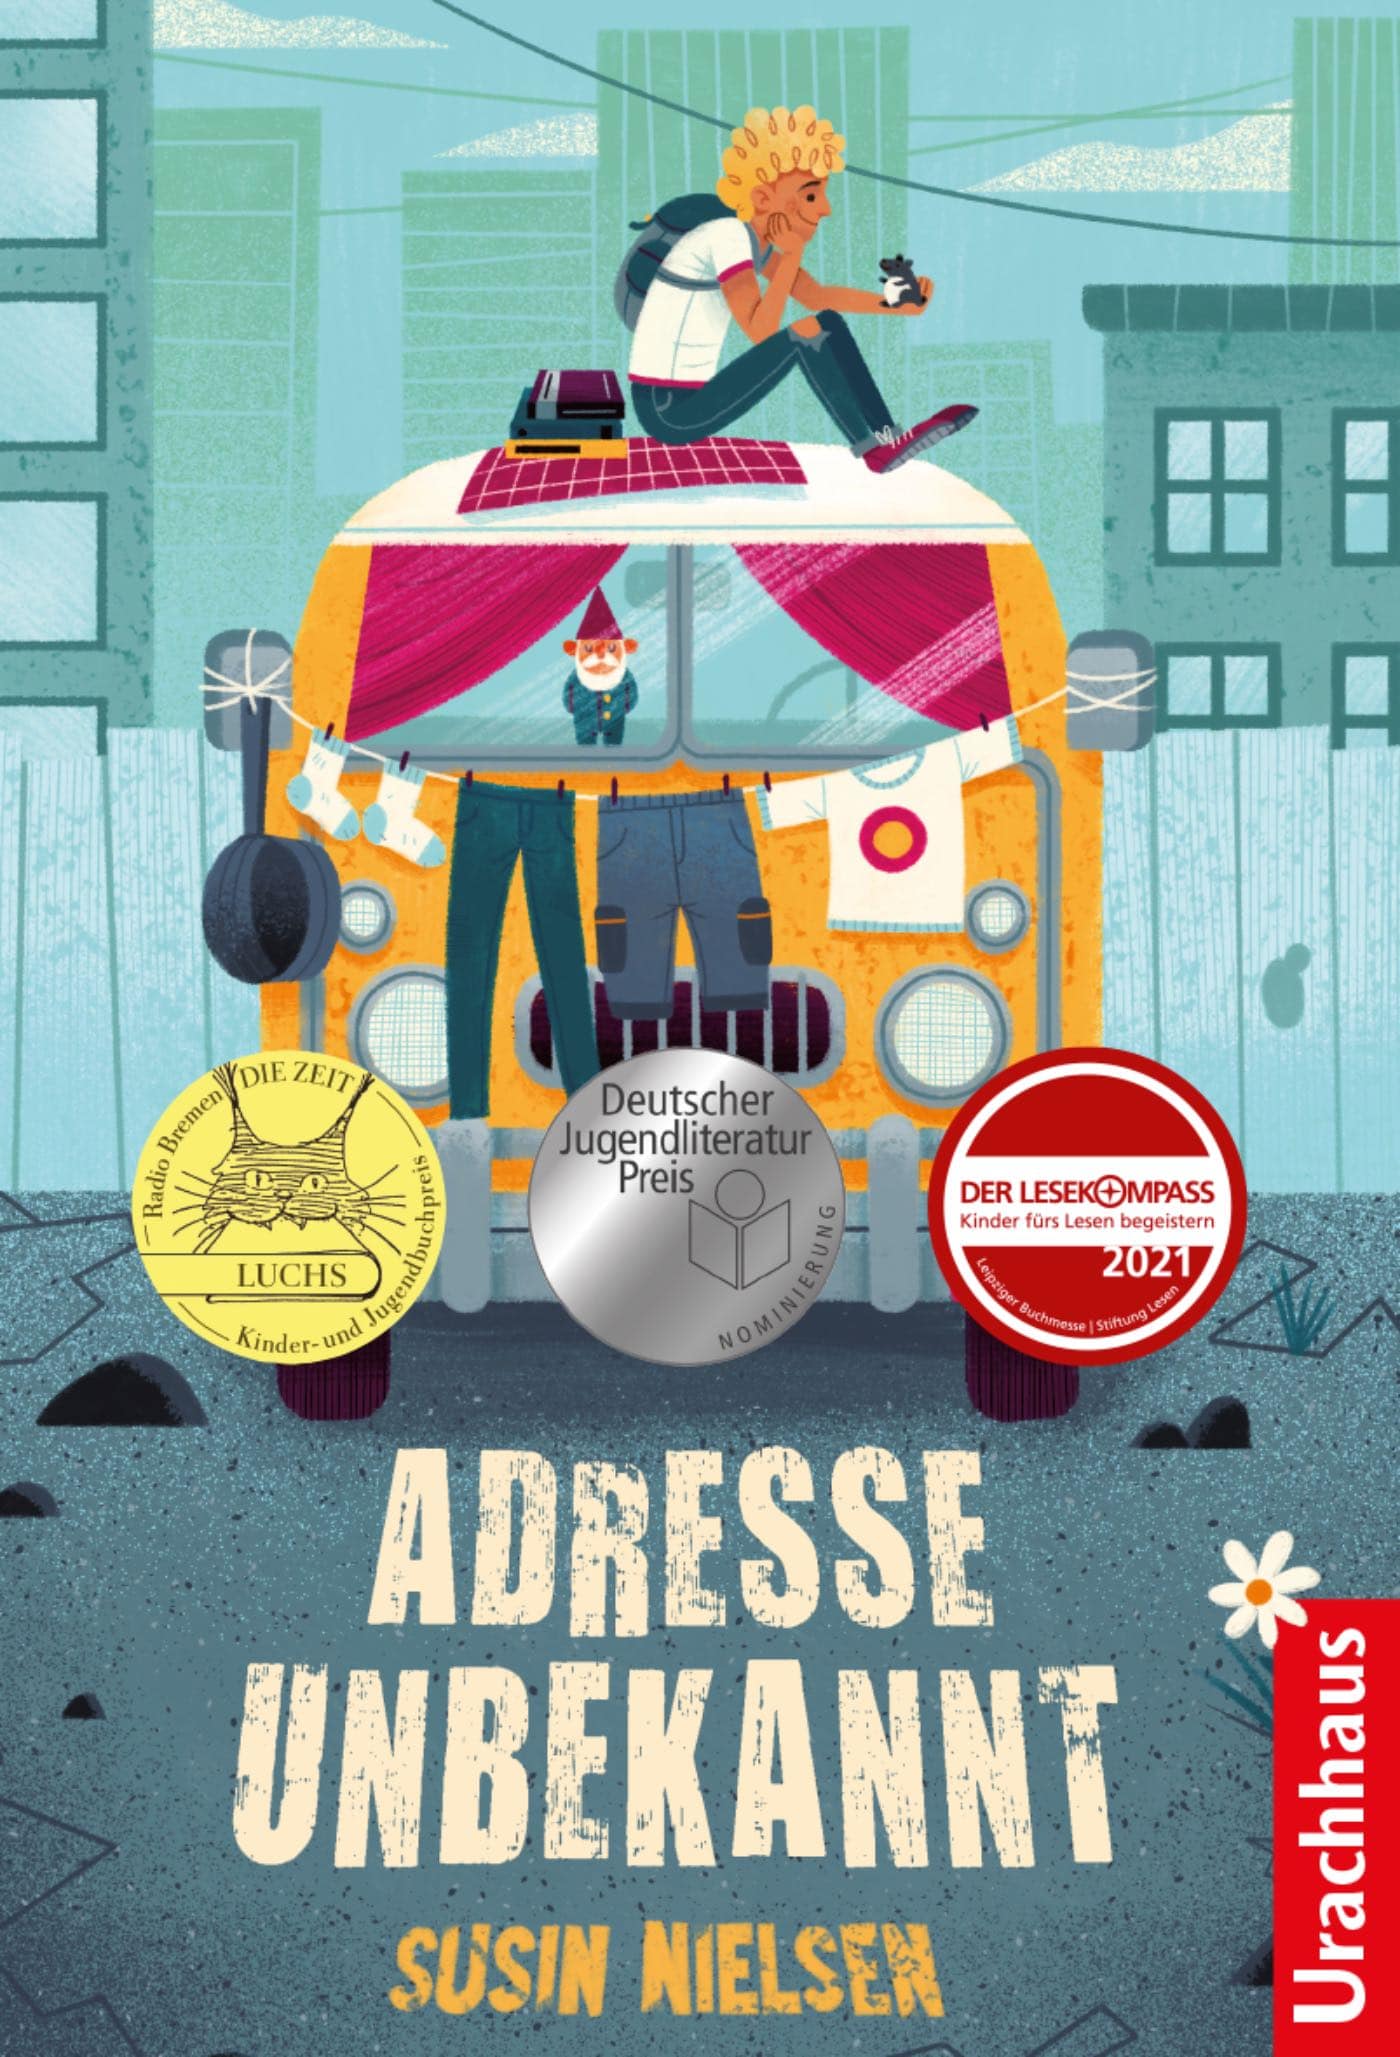 Deutscher Jugendliteraturpreis 2021 – nominiertes Kinderbuch: Adresse unbekannt // HIMBEER